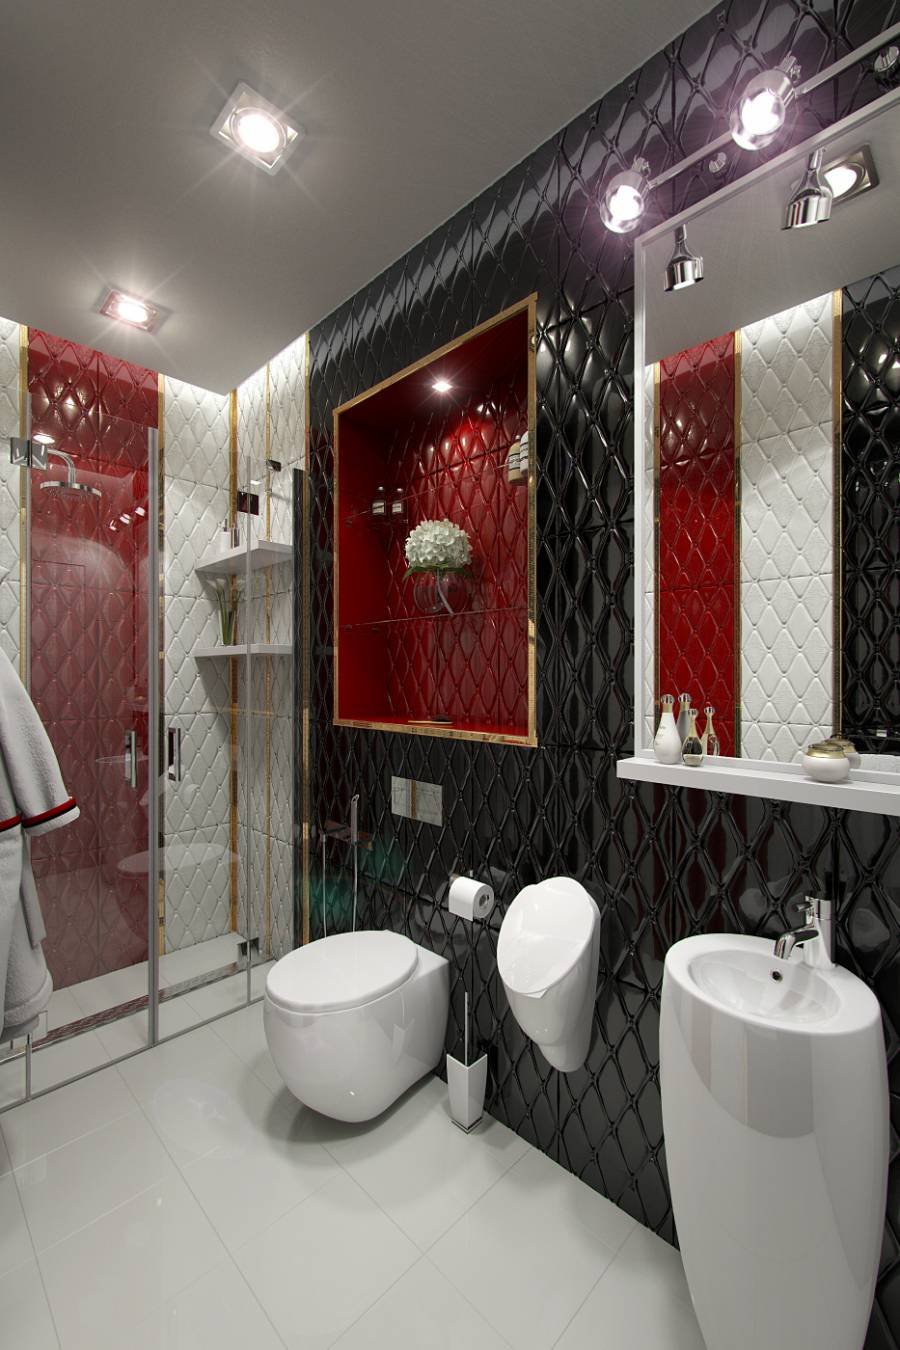 Туалет и ванная в Красном стиле